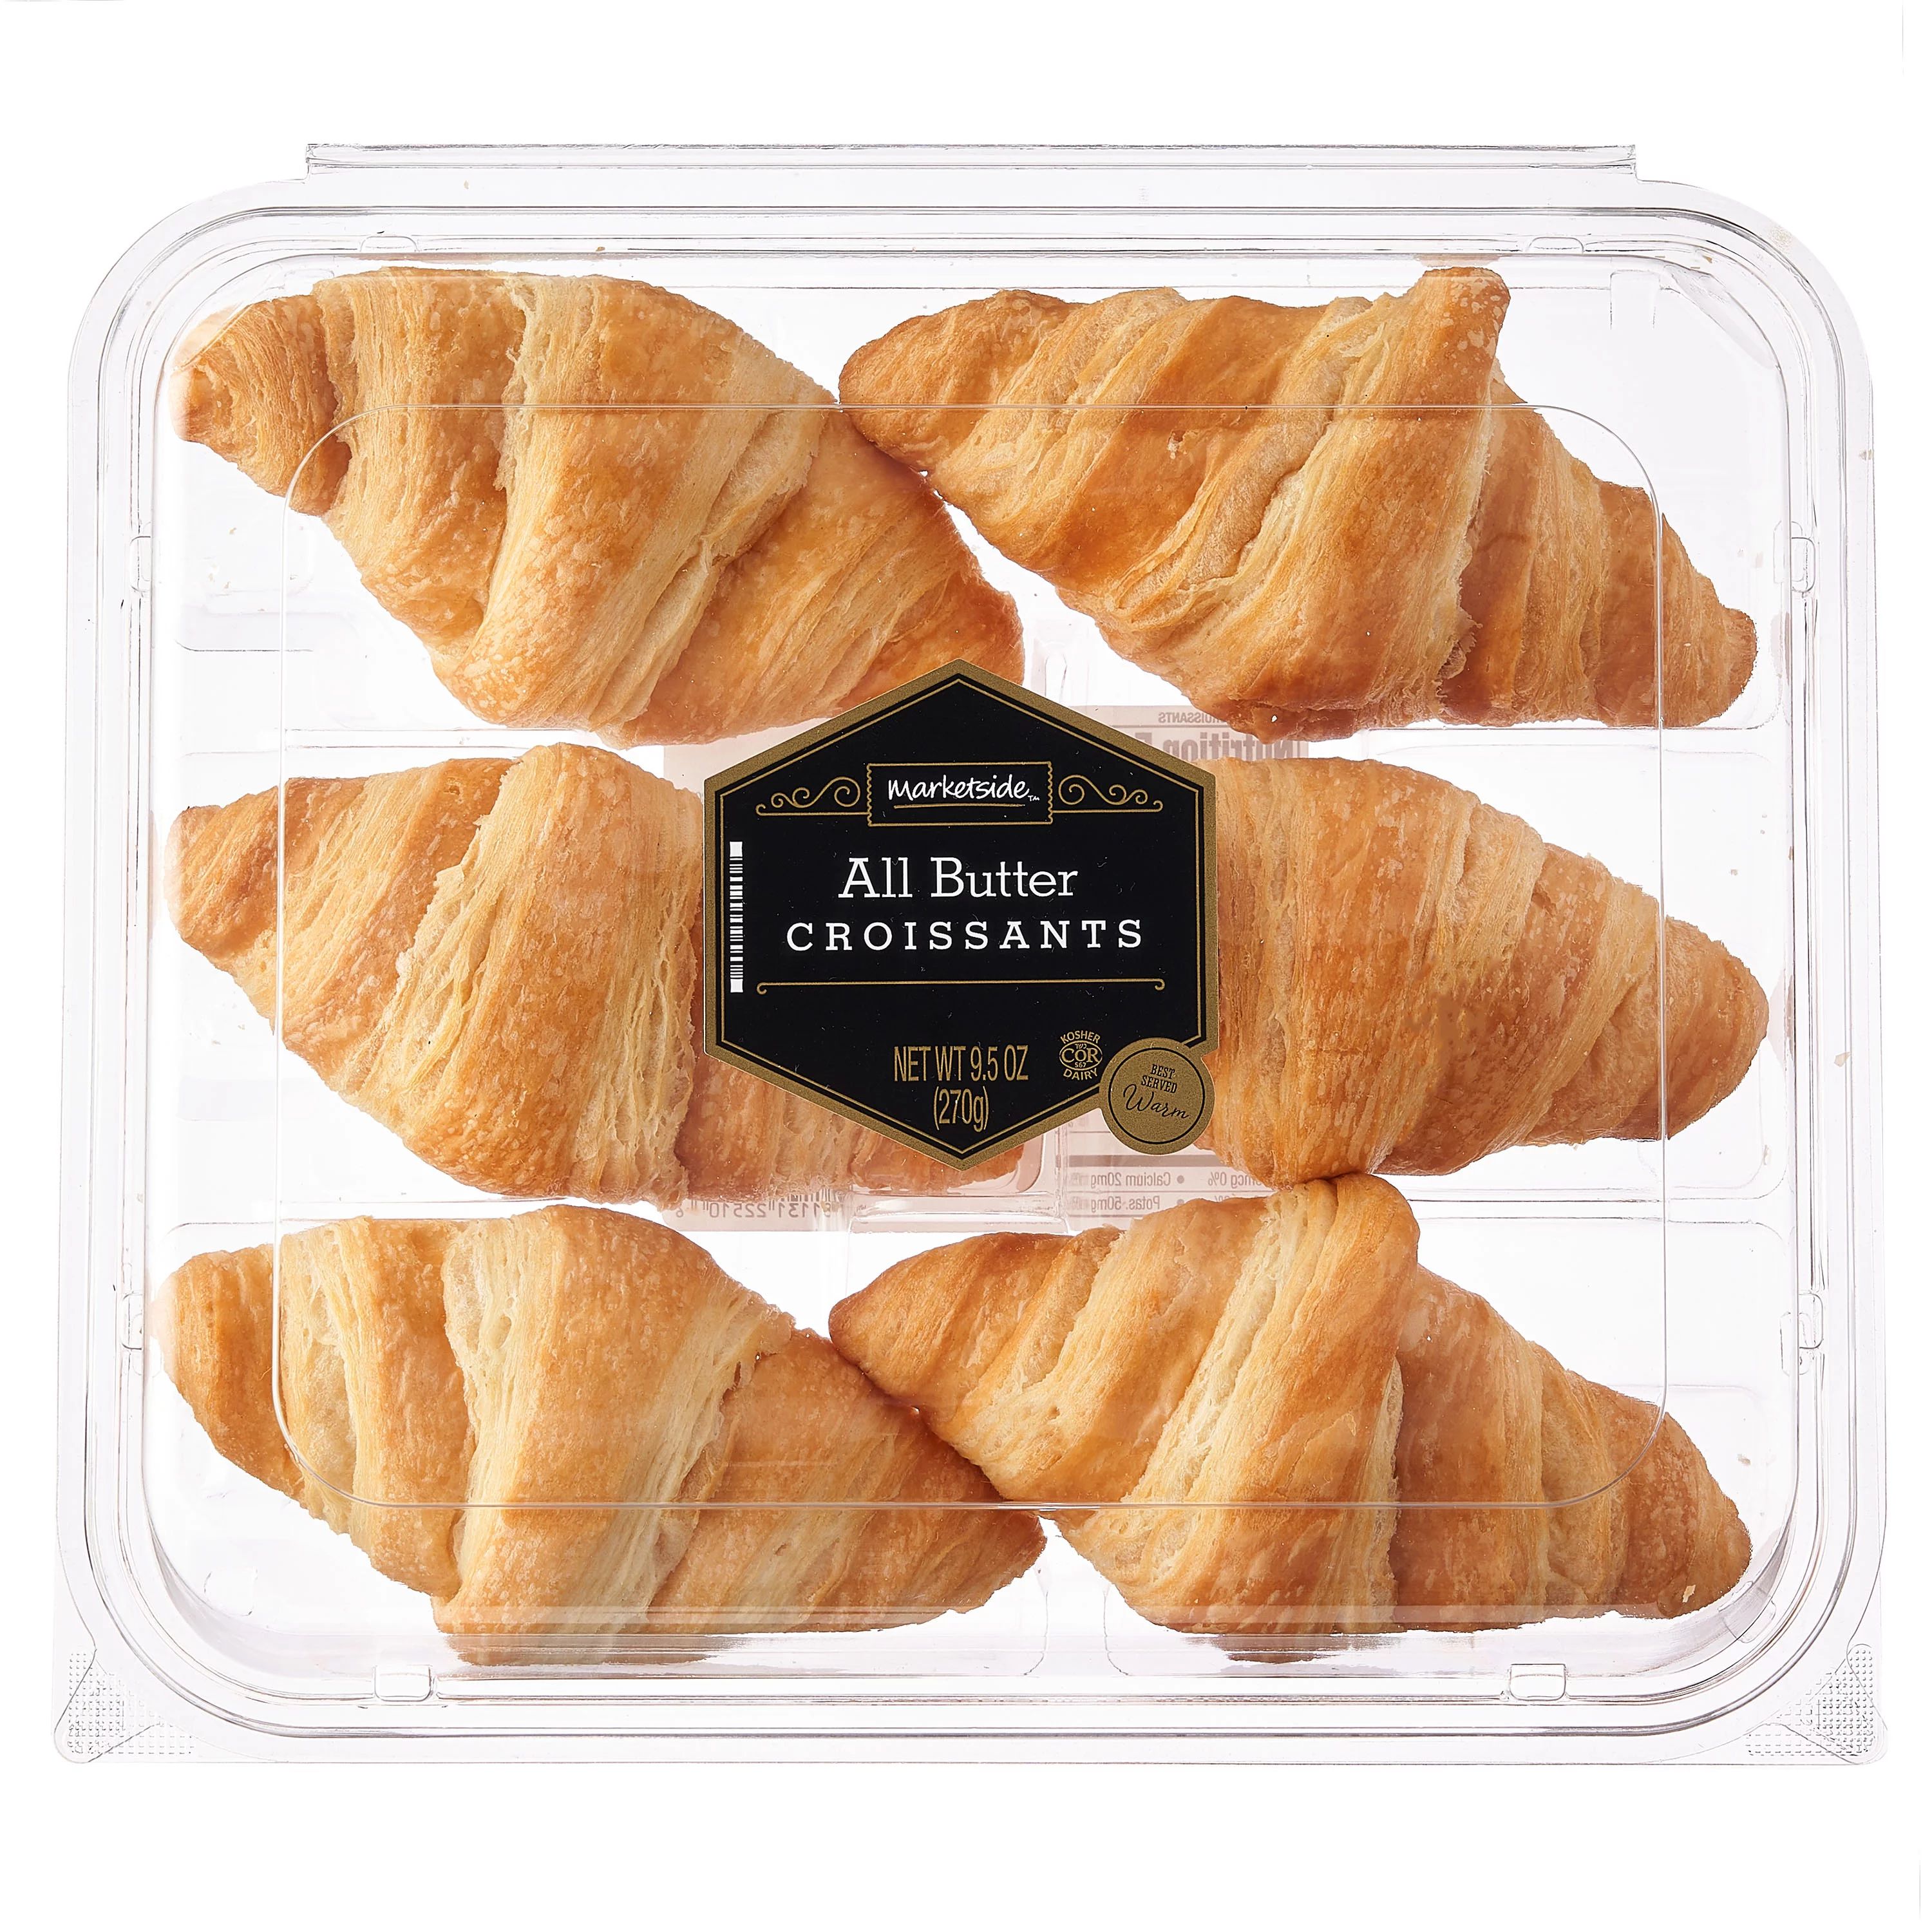 Marketside All Butter Croissants, 9.5 oz, 6 Count - Walmart.com | Walmart (US)